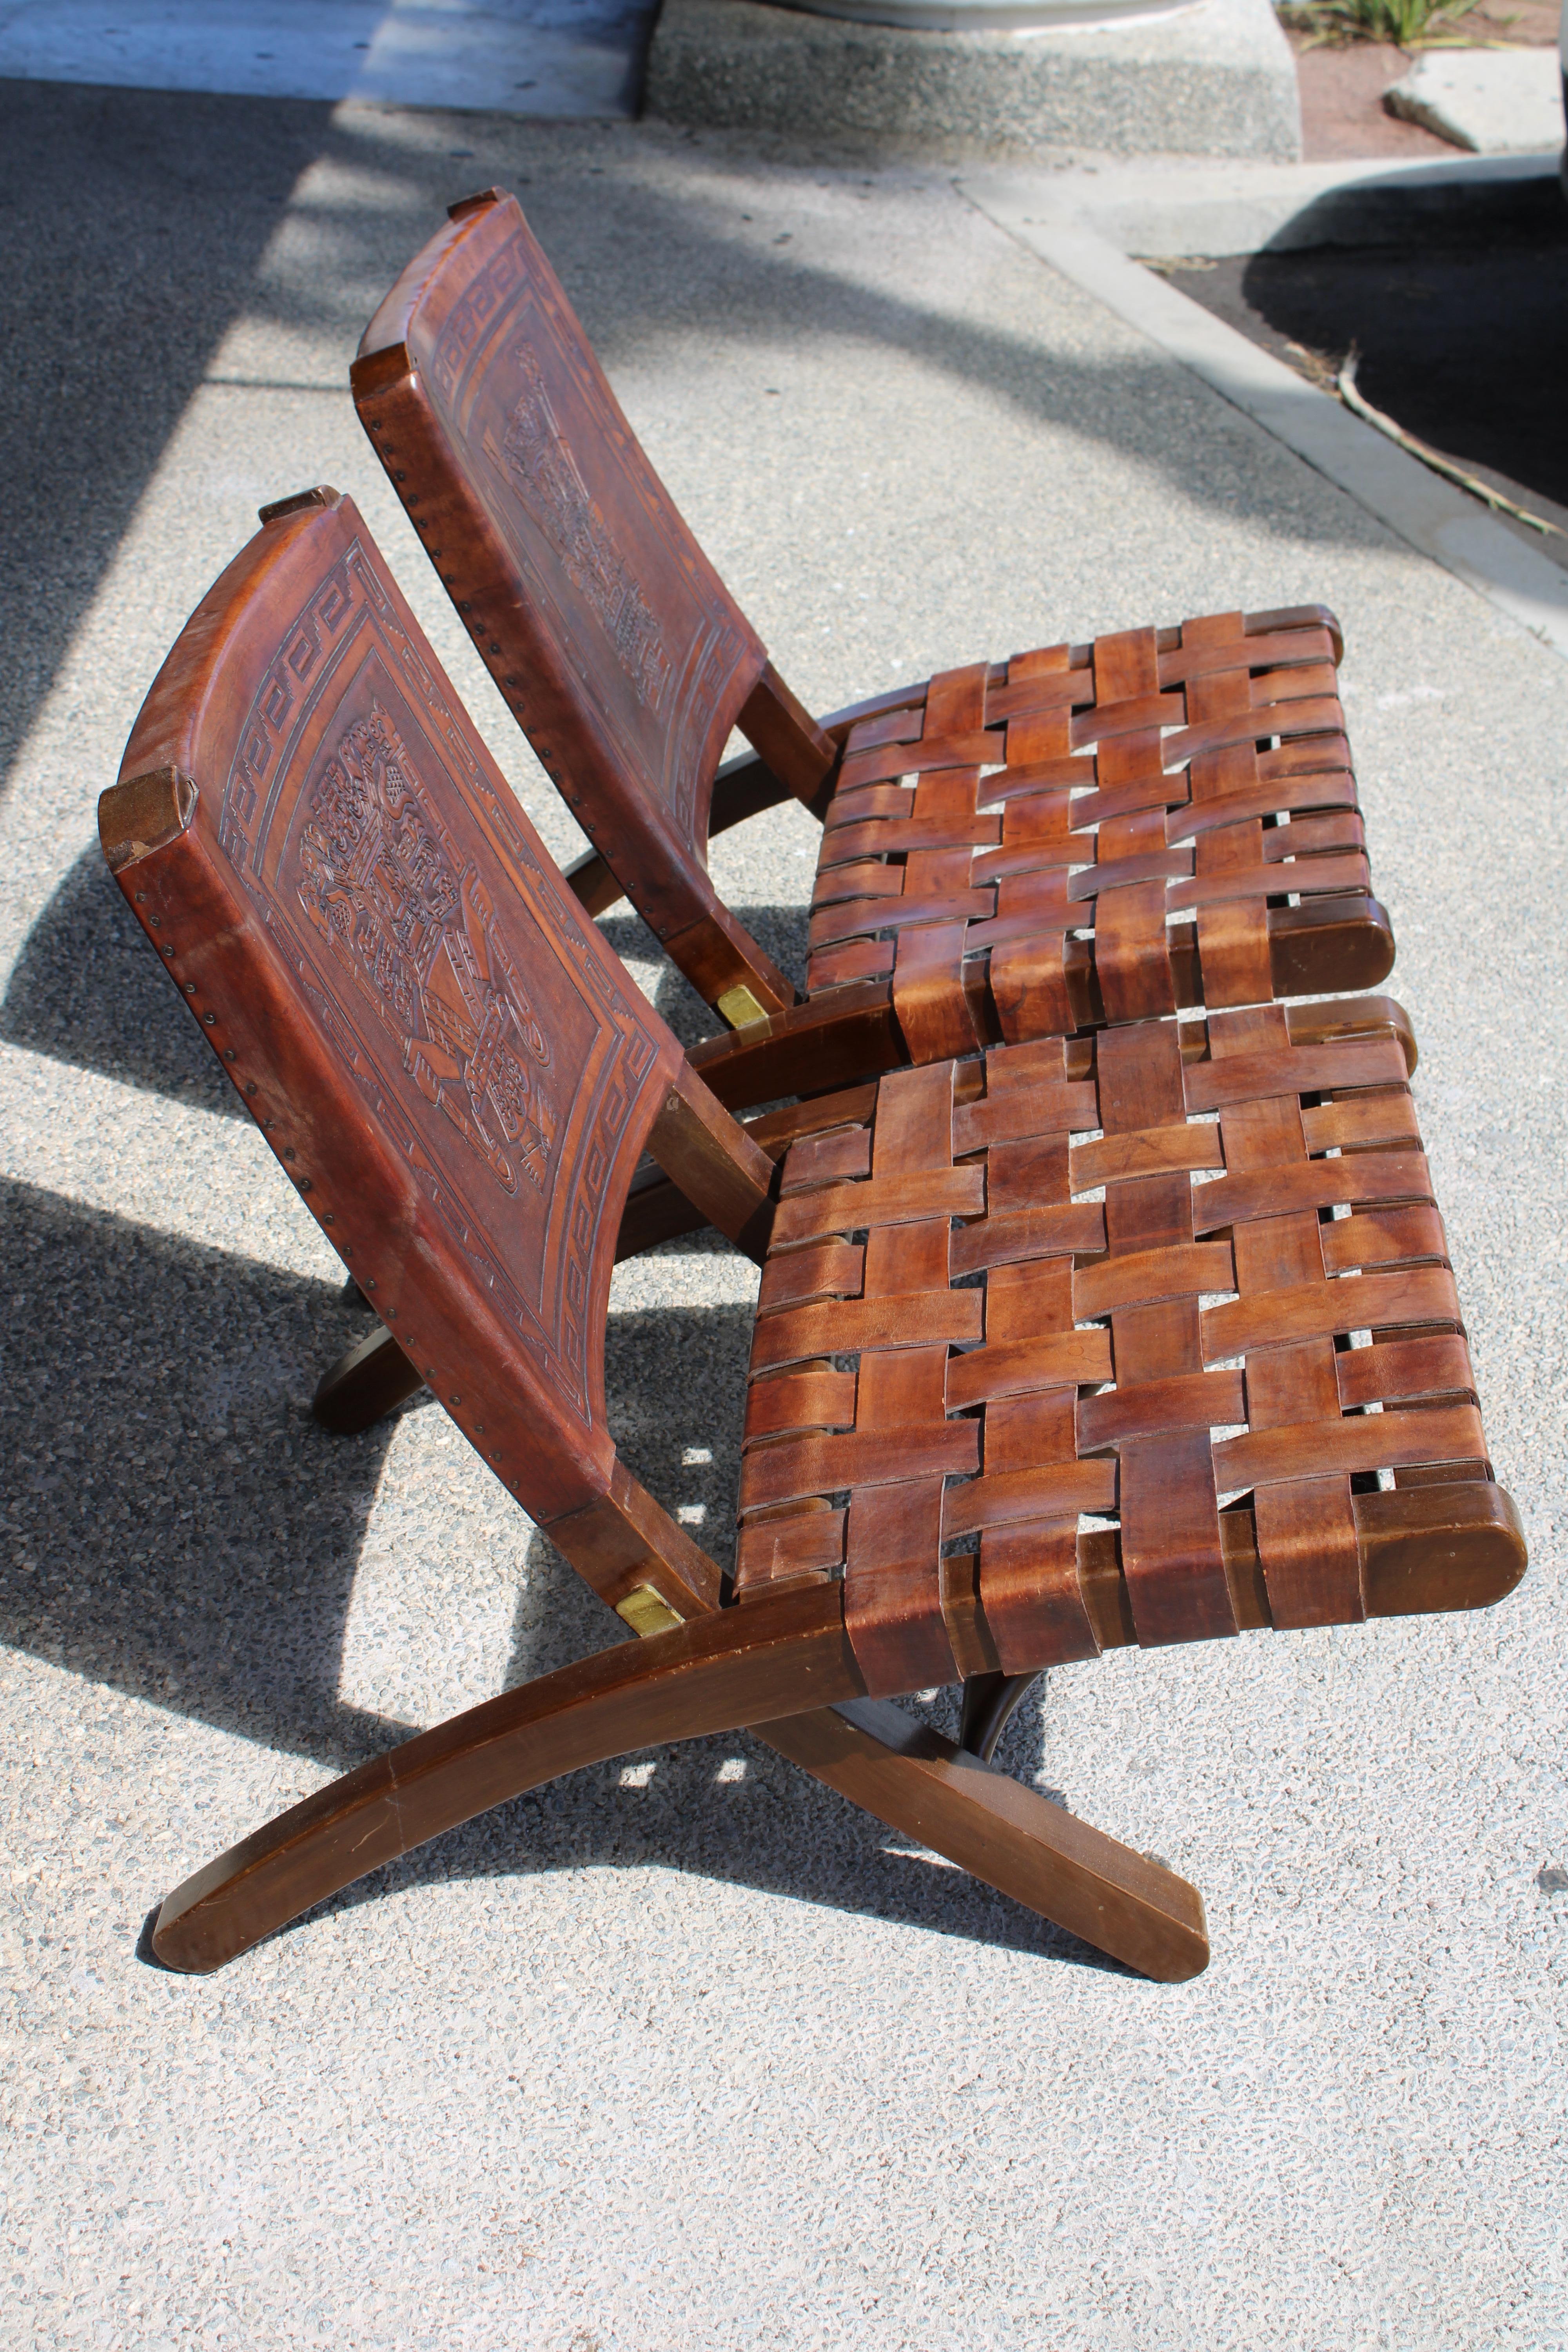 Paire de chaises pliantes d'Angel Pazmino pour Muebles De Estilo, Equateur, vers les années 1960. Cadres en bois avec dos en cuir de selle épais gaufré de motifs incas ou aztèques. Les sièges sont réalisés dans un motif tissé en croûte. Charnières